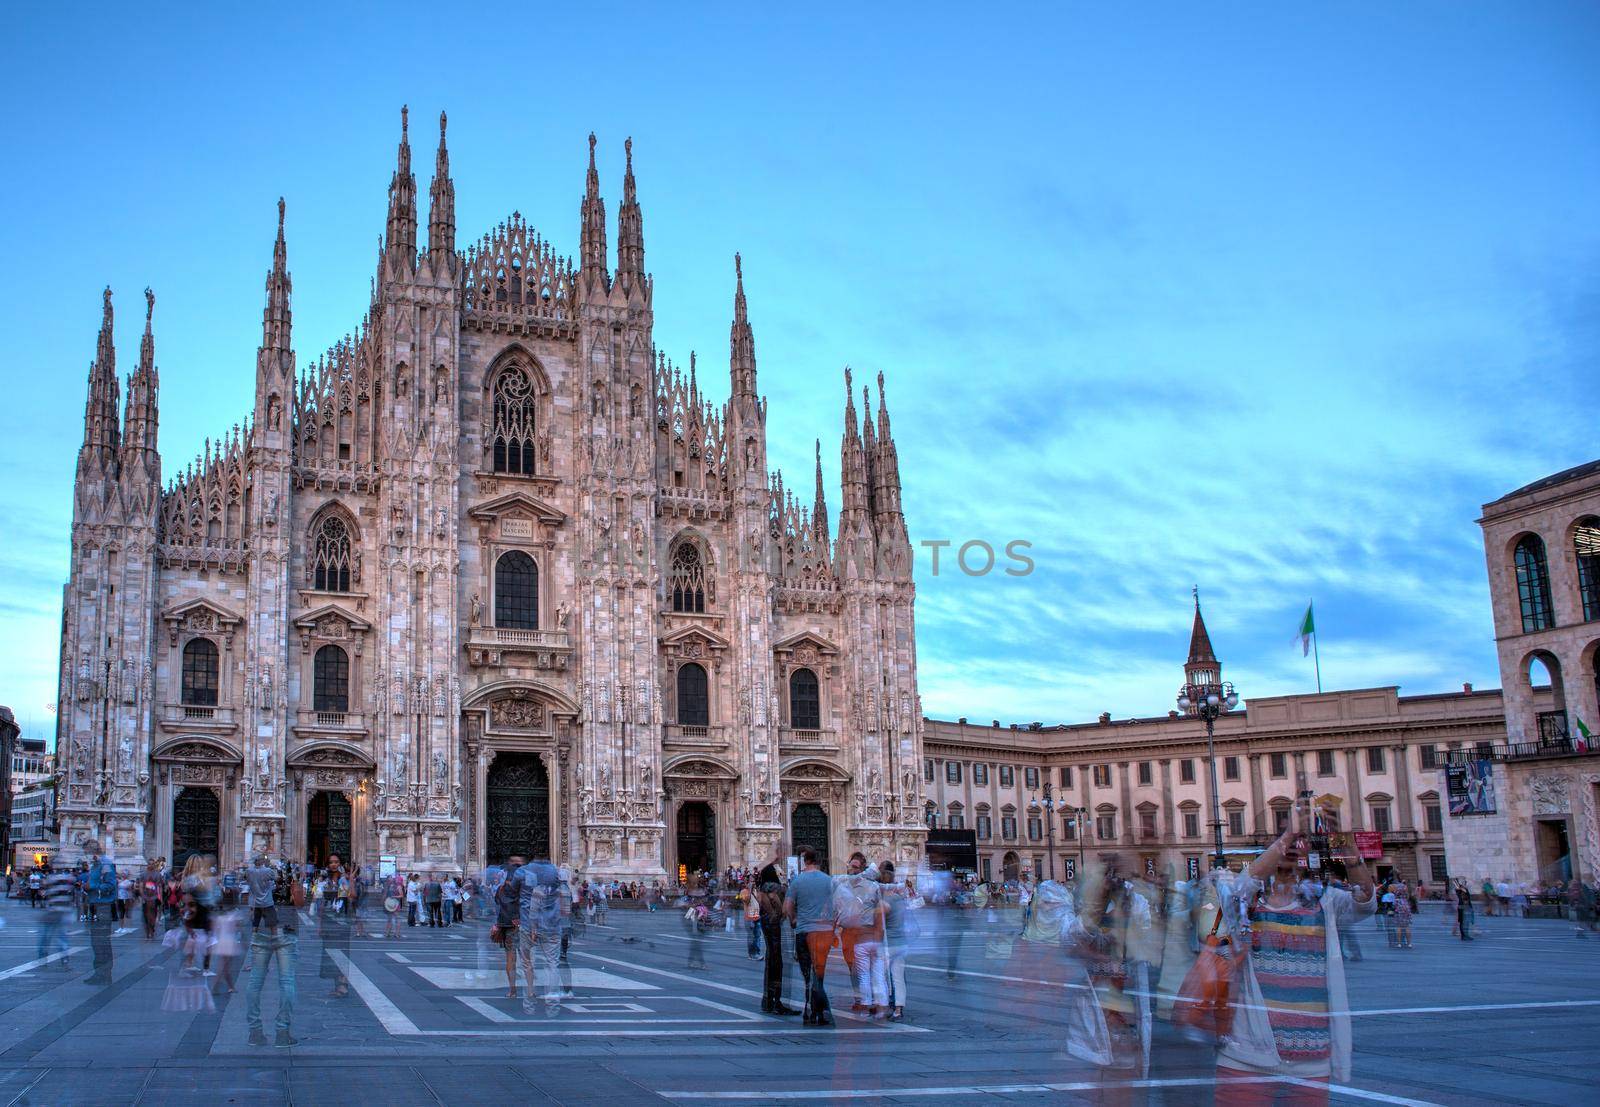 Piazza del Duomo, Milan by bepsimage